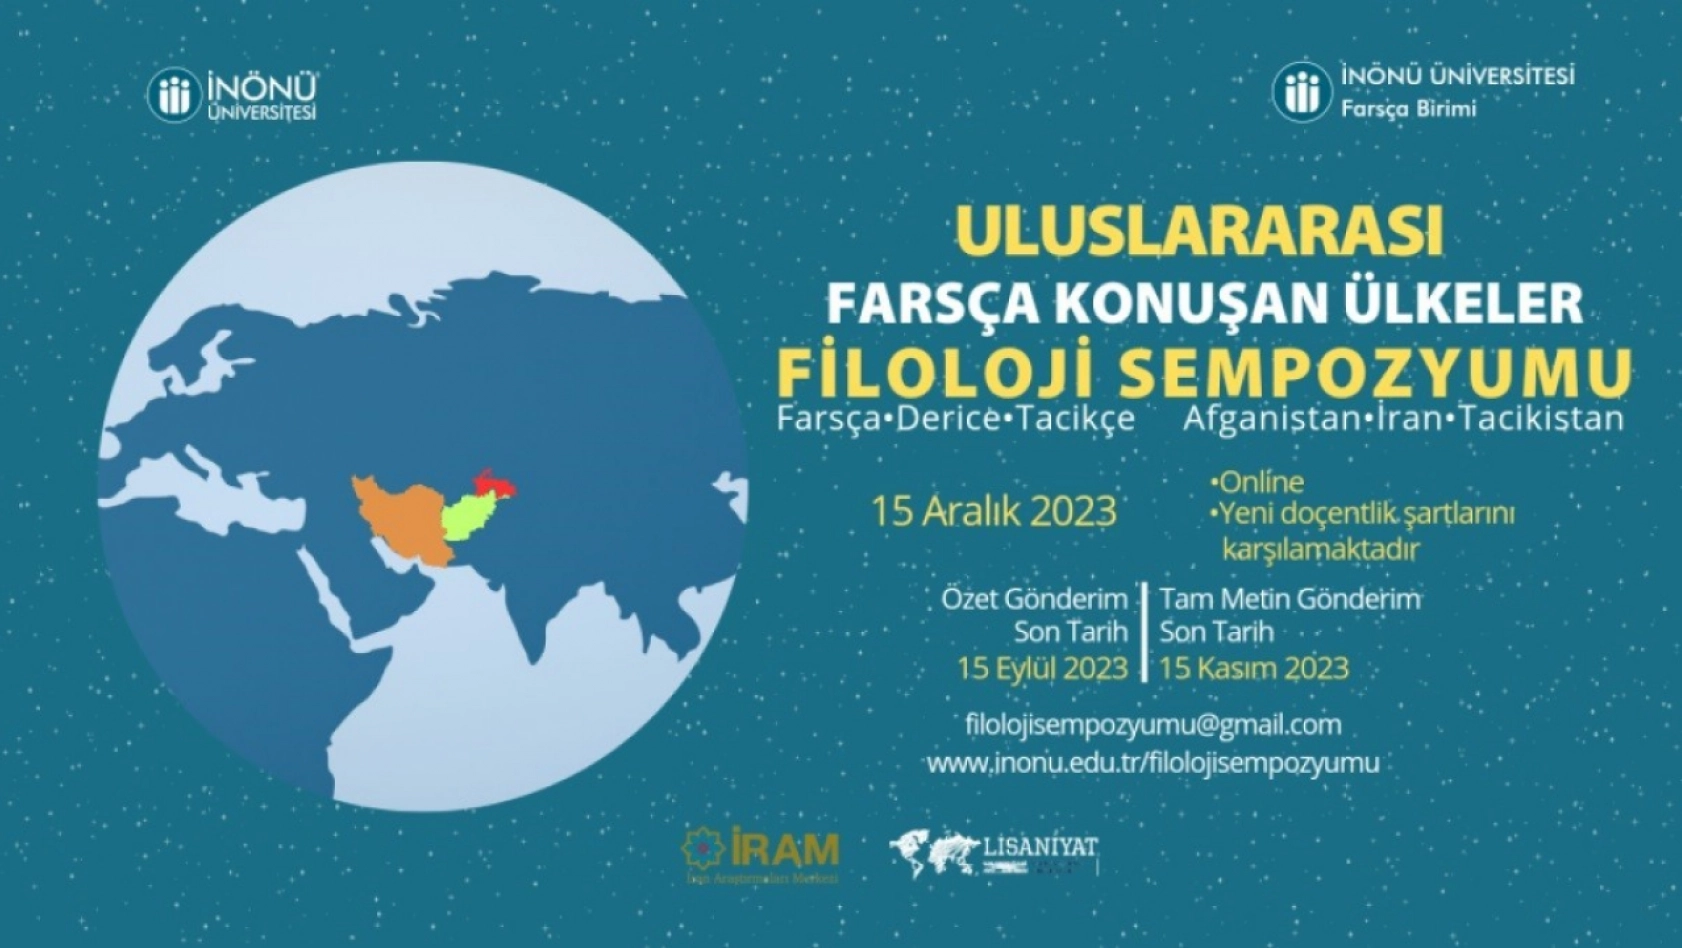 Uluslararası Farsça Konuşan Ülkeler Filoloji Sempozyumu'na yurtdışından yoğun ilgi